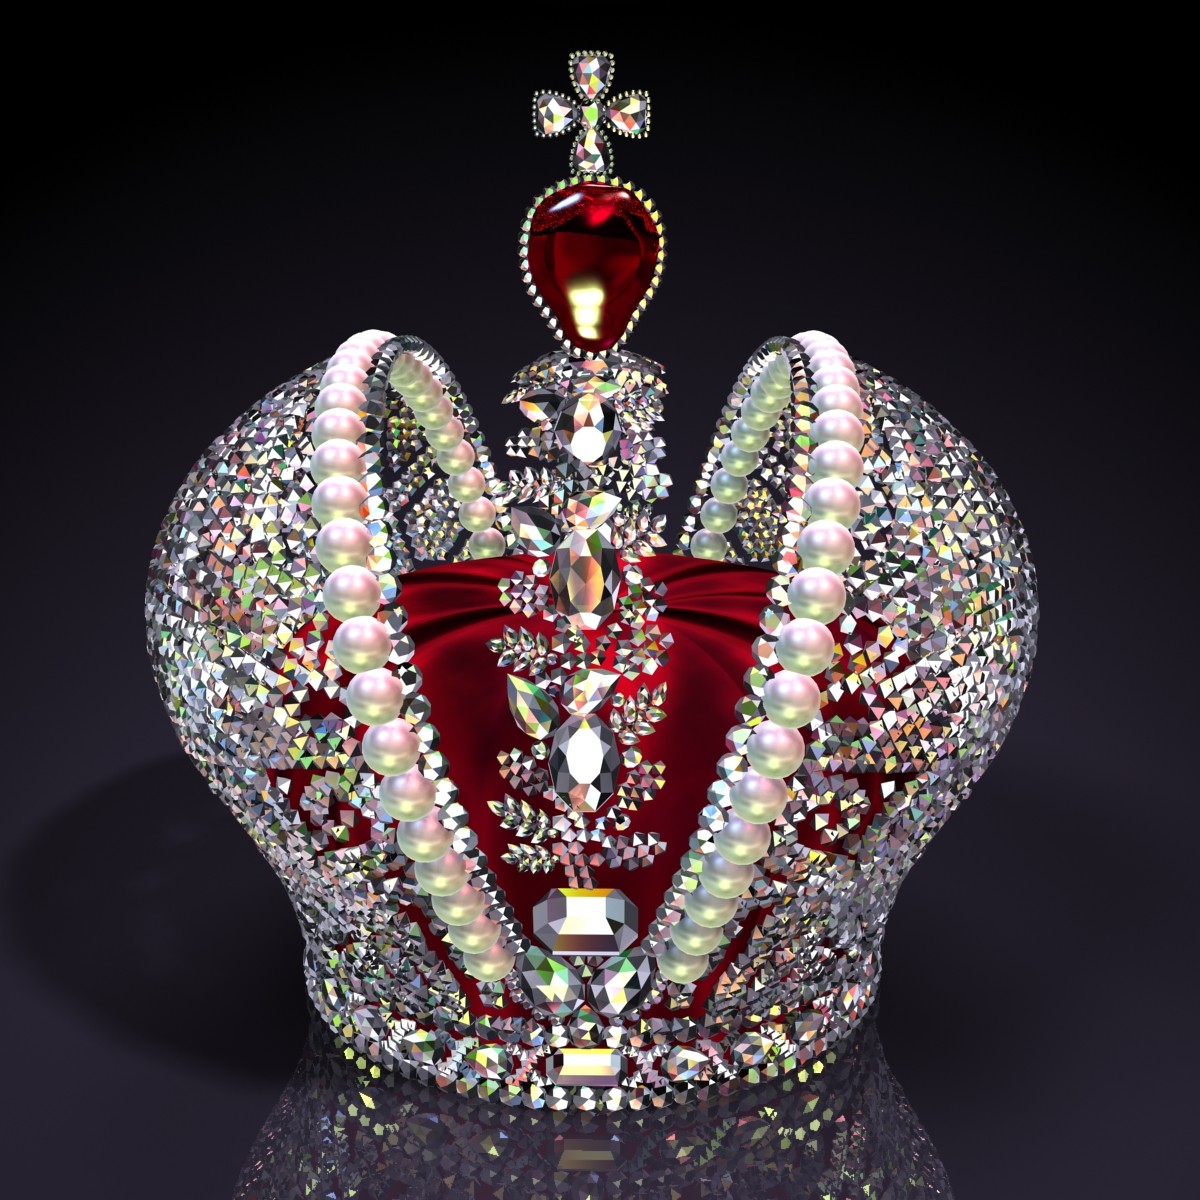 叶卡特琳娜大帝的皇冠，上面镶嵌着一颗红宝石